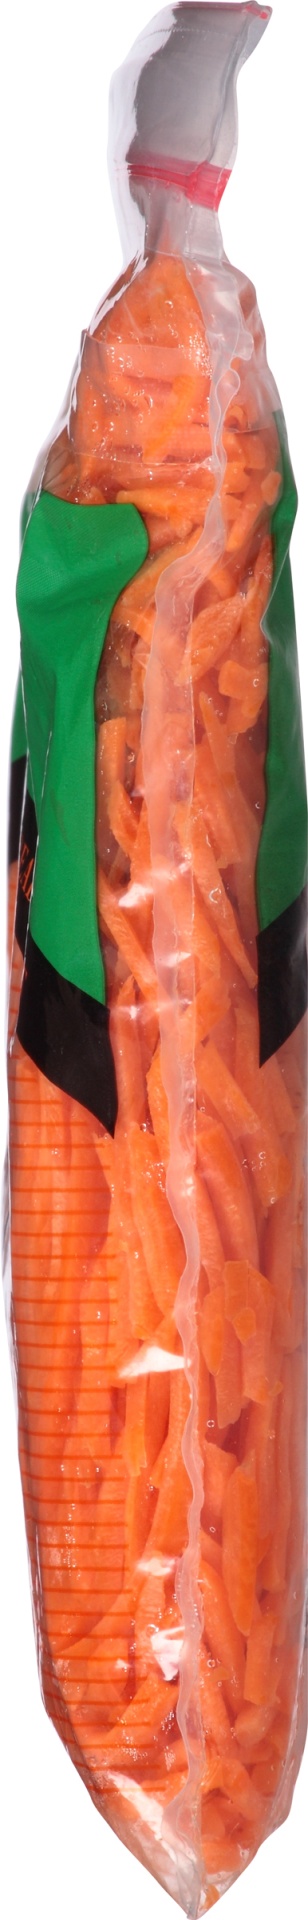 slide 3 of 6, Grimmway Farm Carrot Shredded, 10 oz